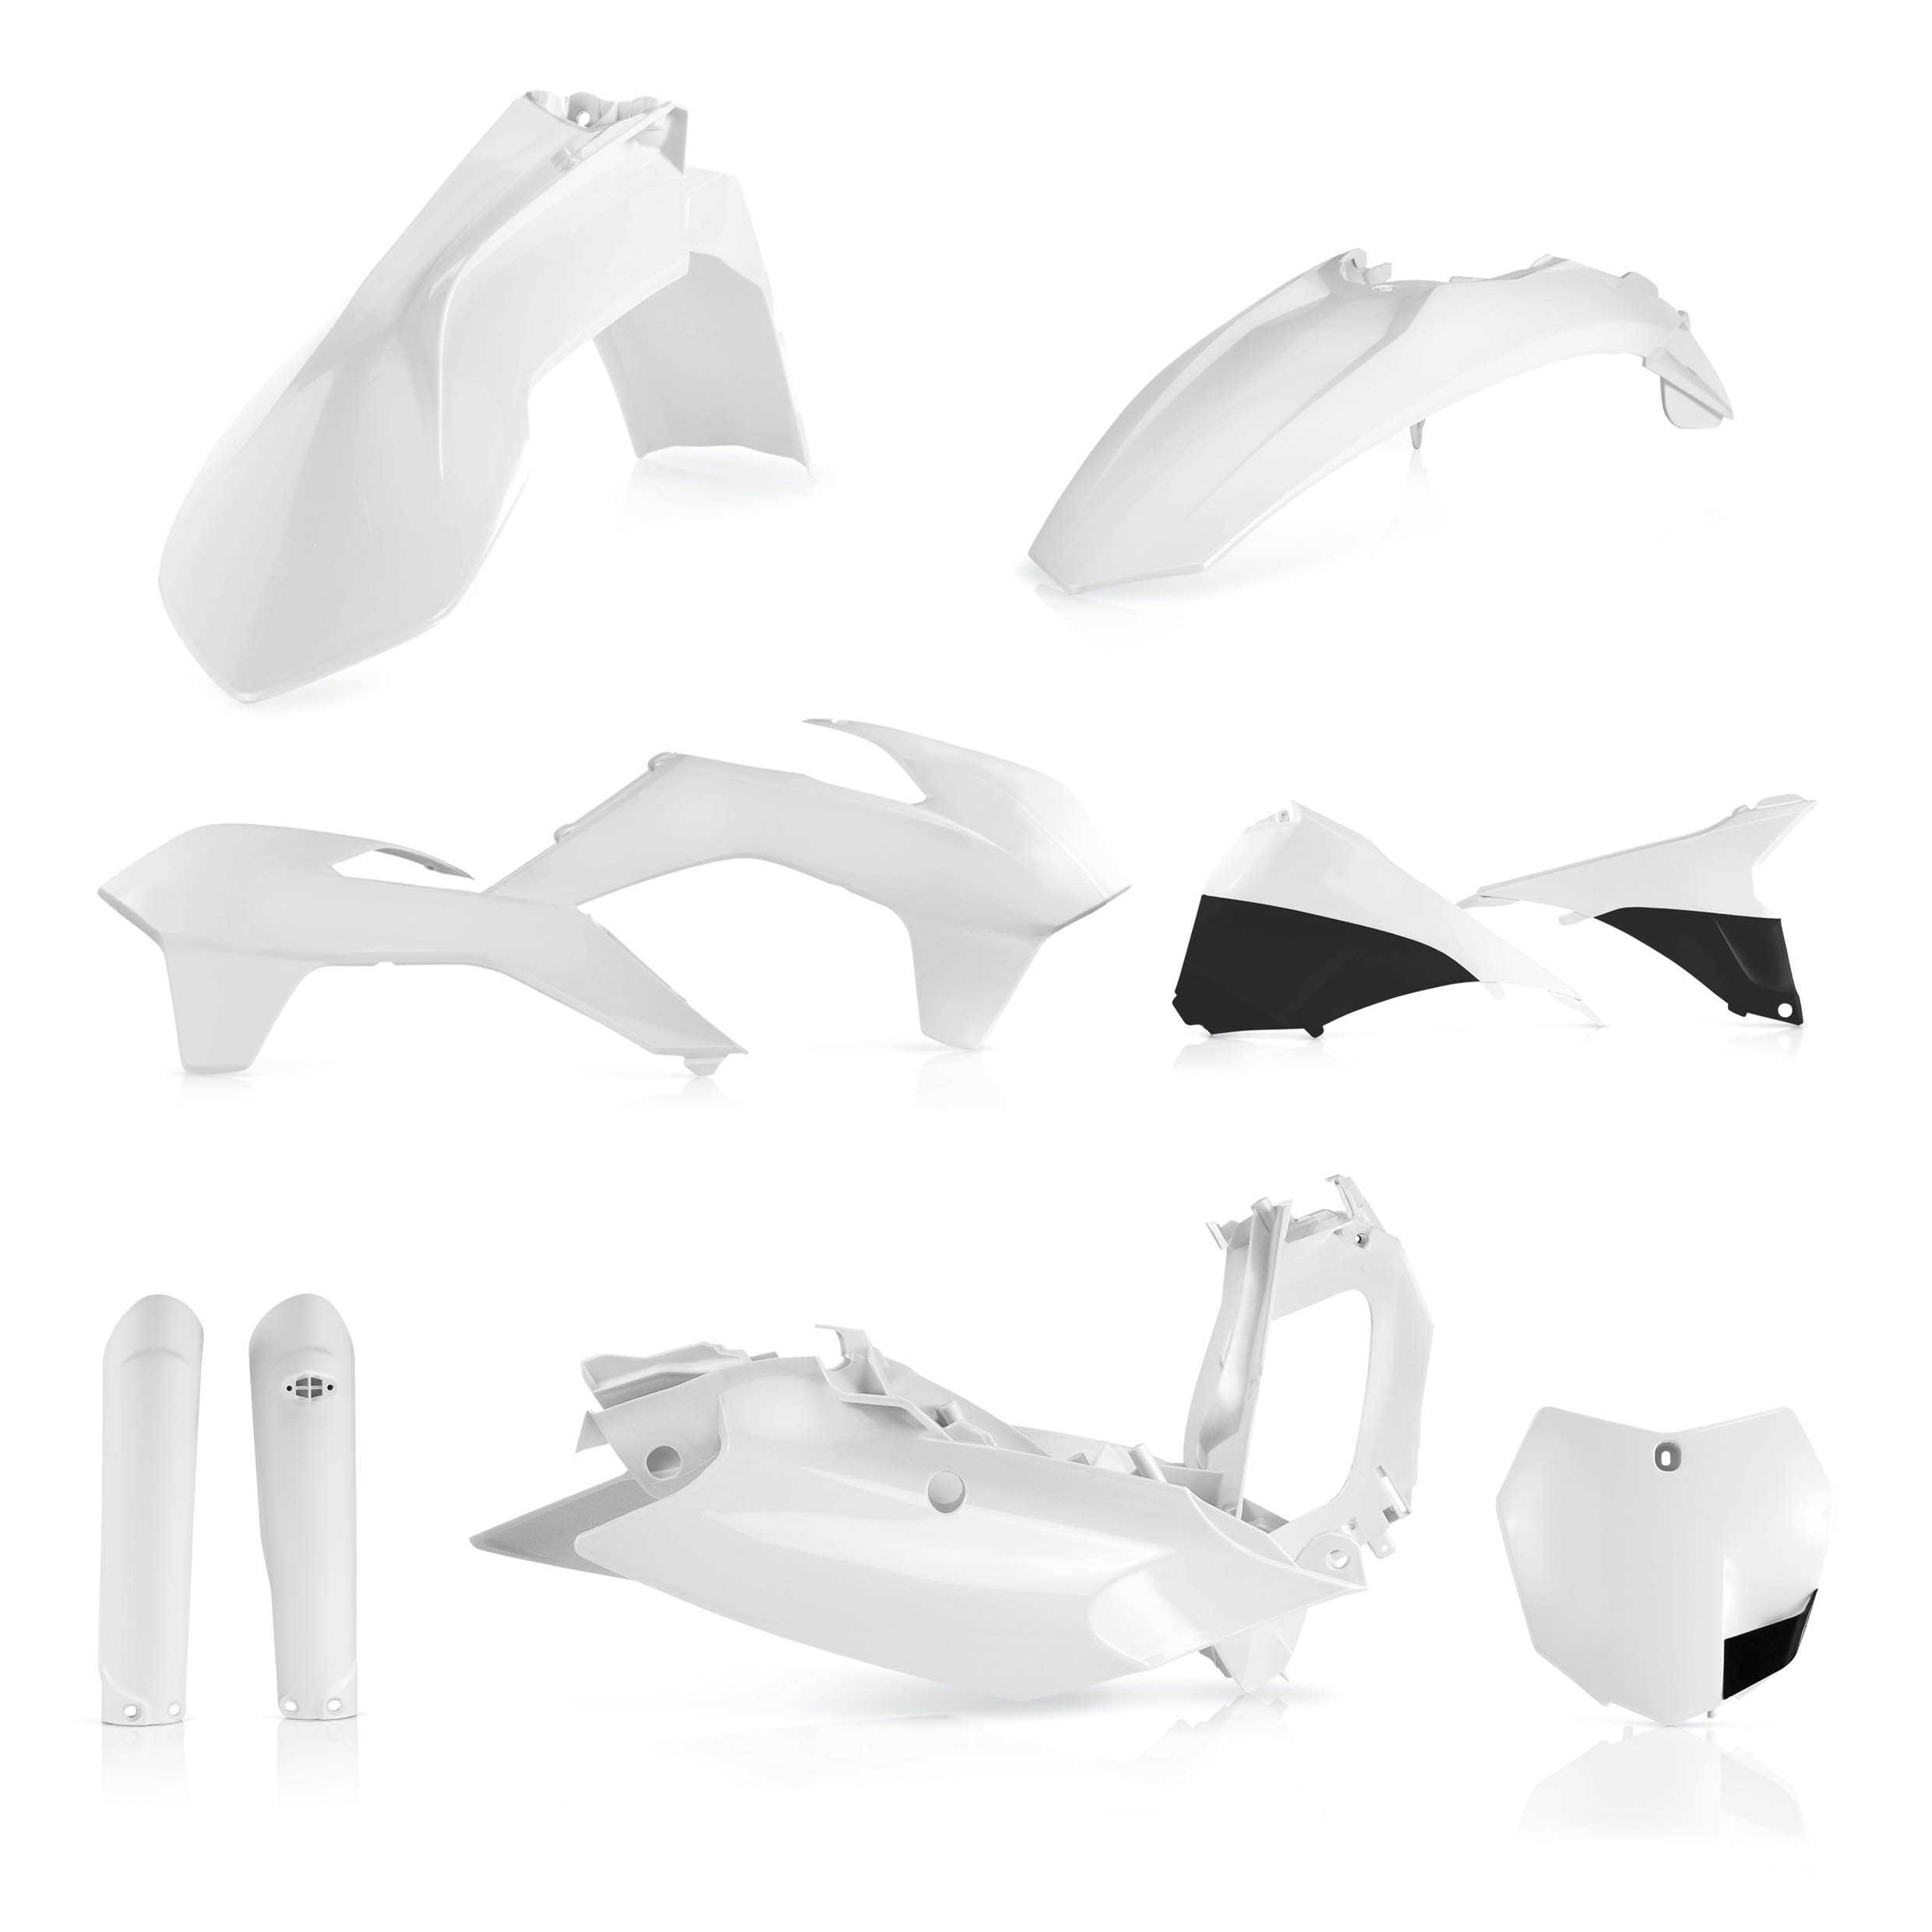 Plastikteile für deine KTM SX / SX-F 125-505 in weiß bestehend aus Kotflügel vorn Kotflügel hinten Kühlerspoiler Gabelschützer Startnummerntafel Air Box Cover